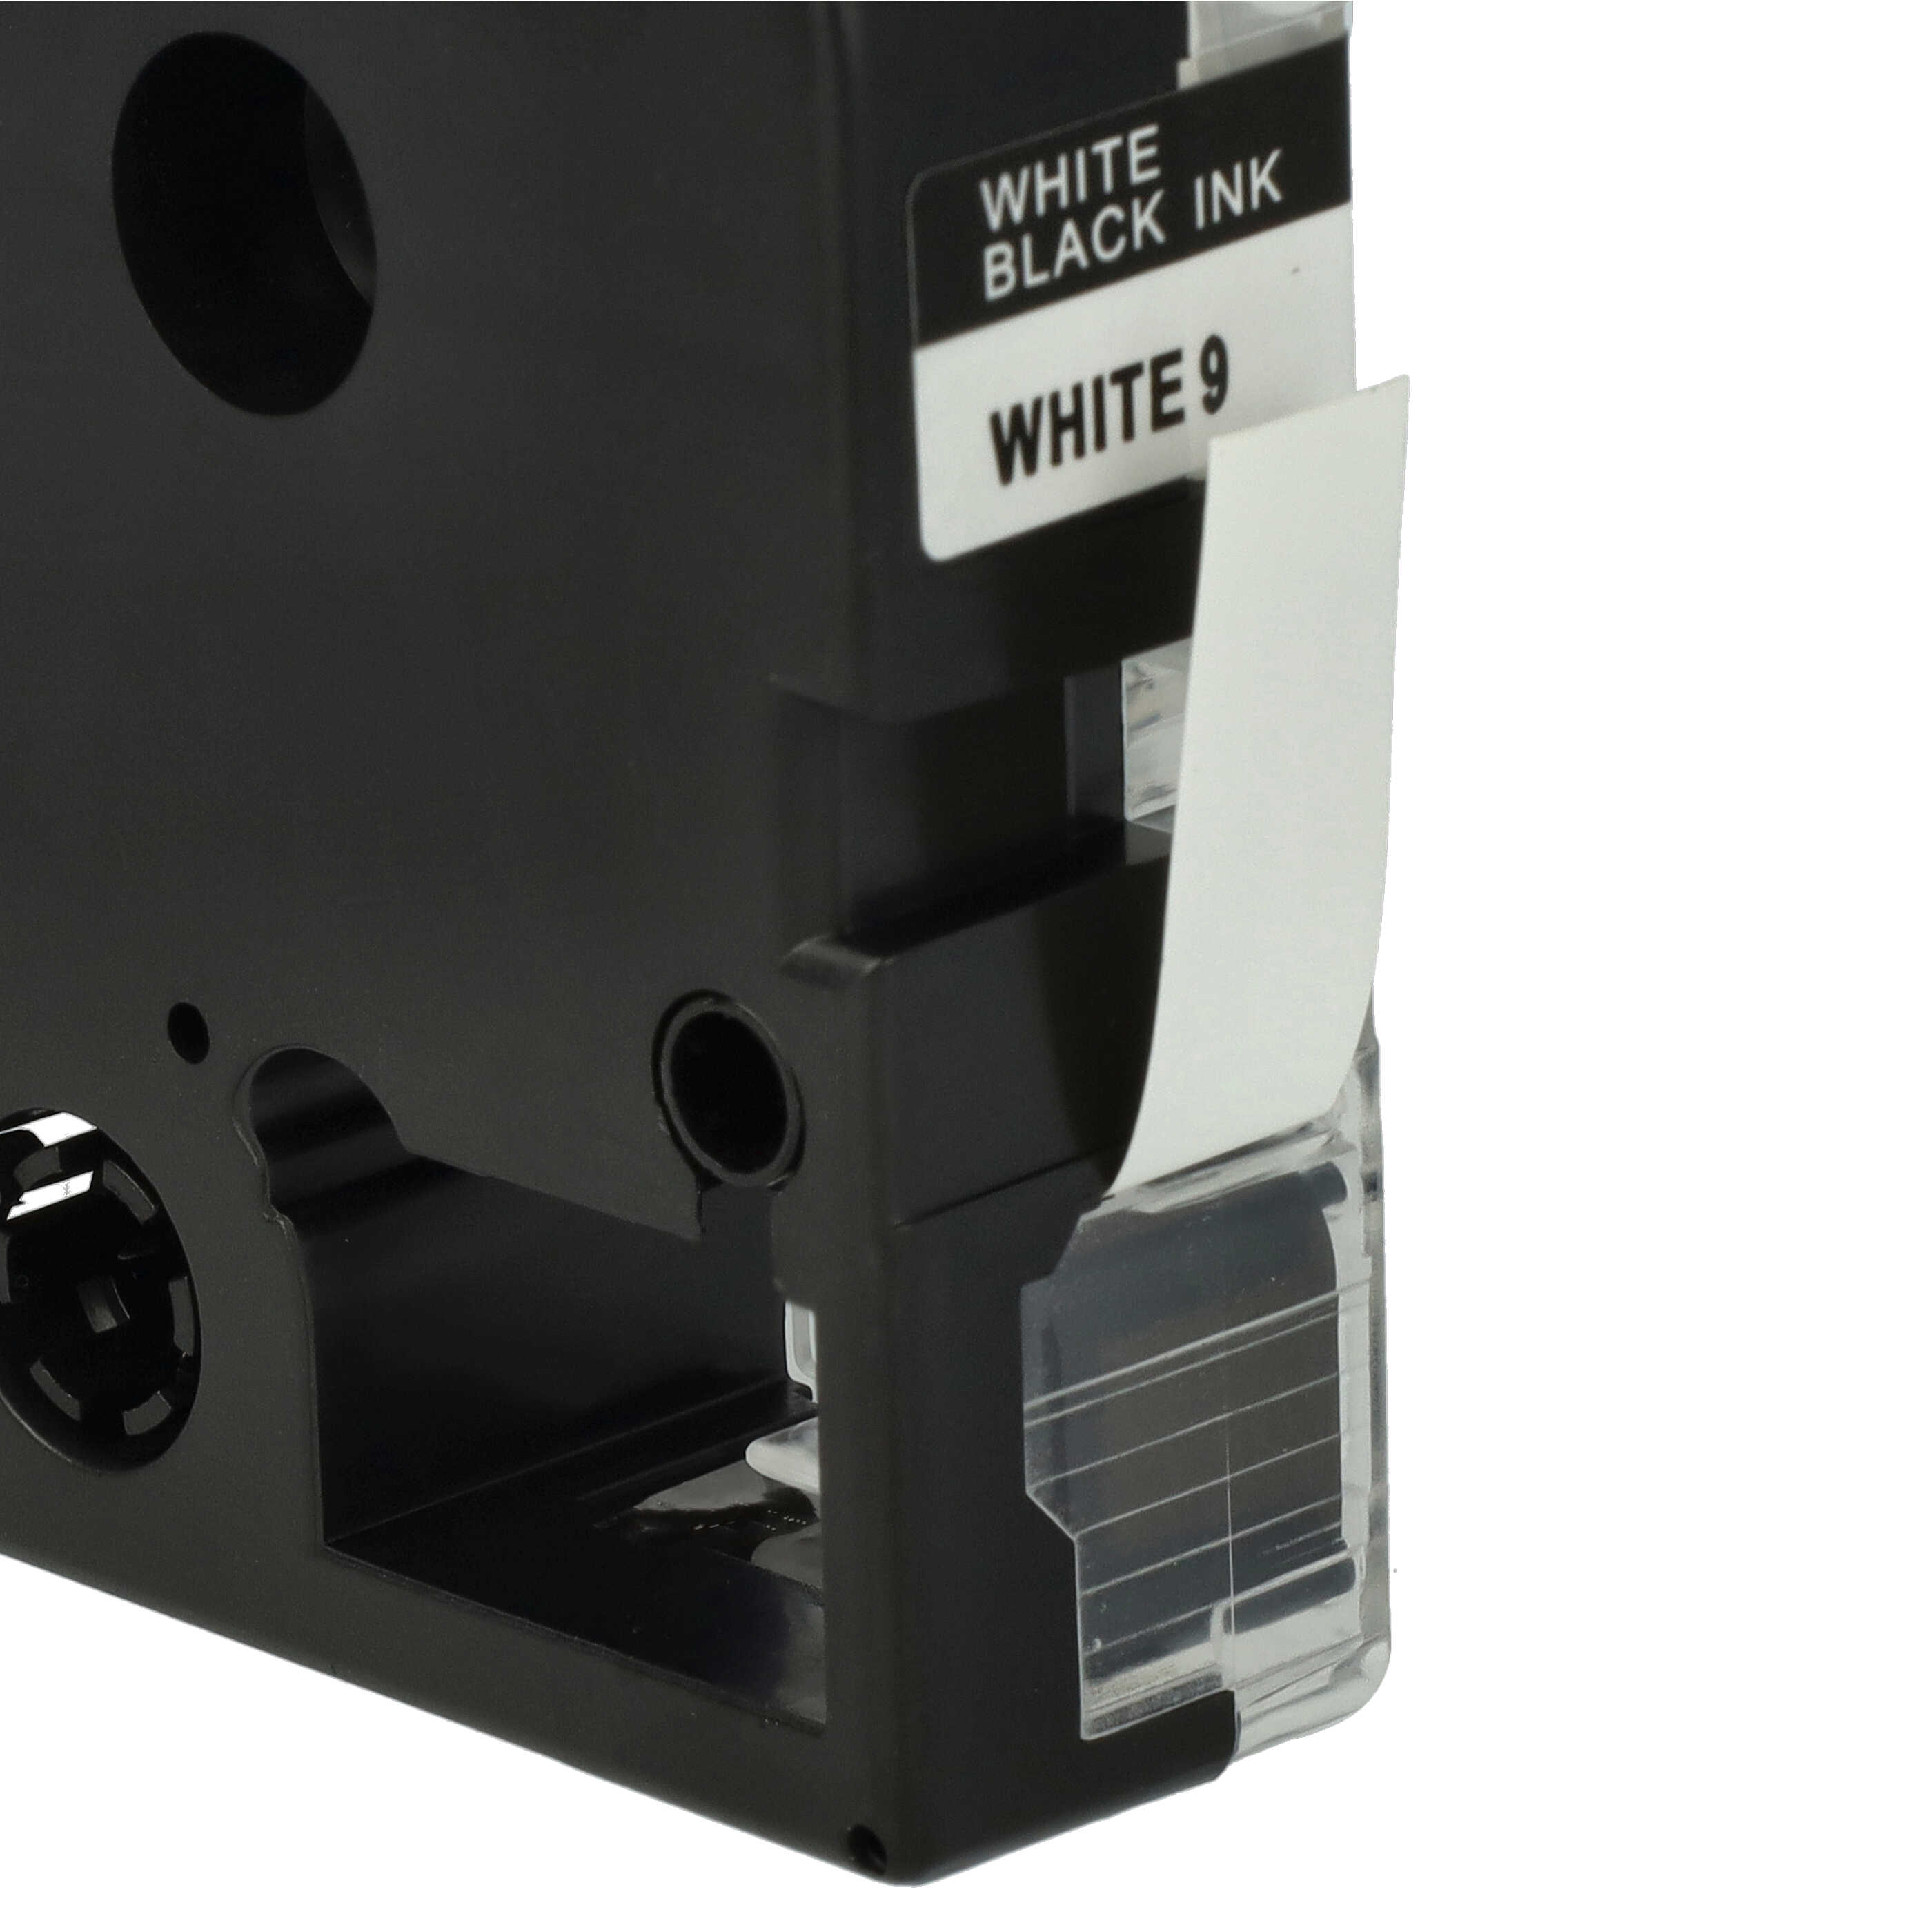 3x Cassettes à ruban remplacent Epson SS9KW, LC-3WBN - 9mm lettrage Noir ruban Blanc